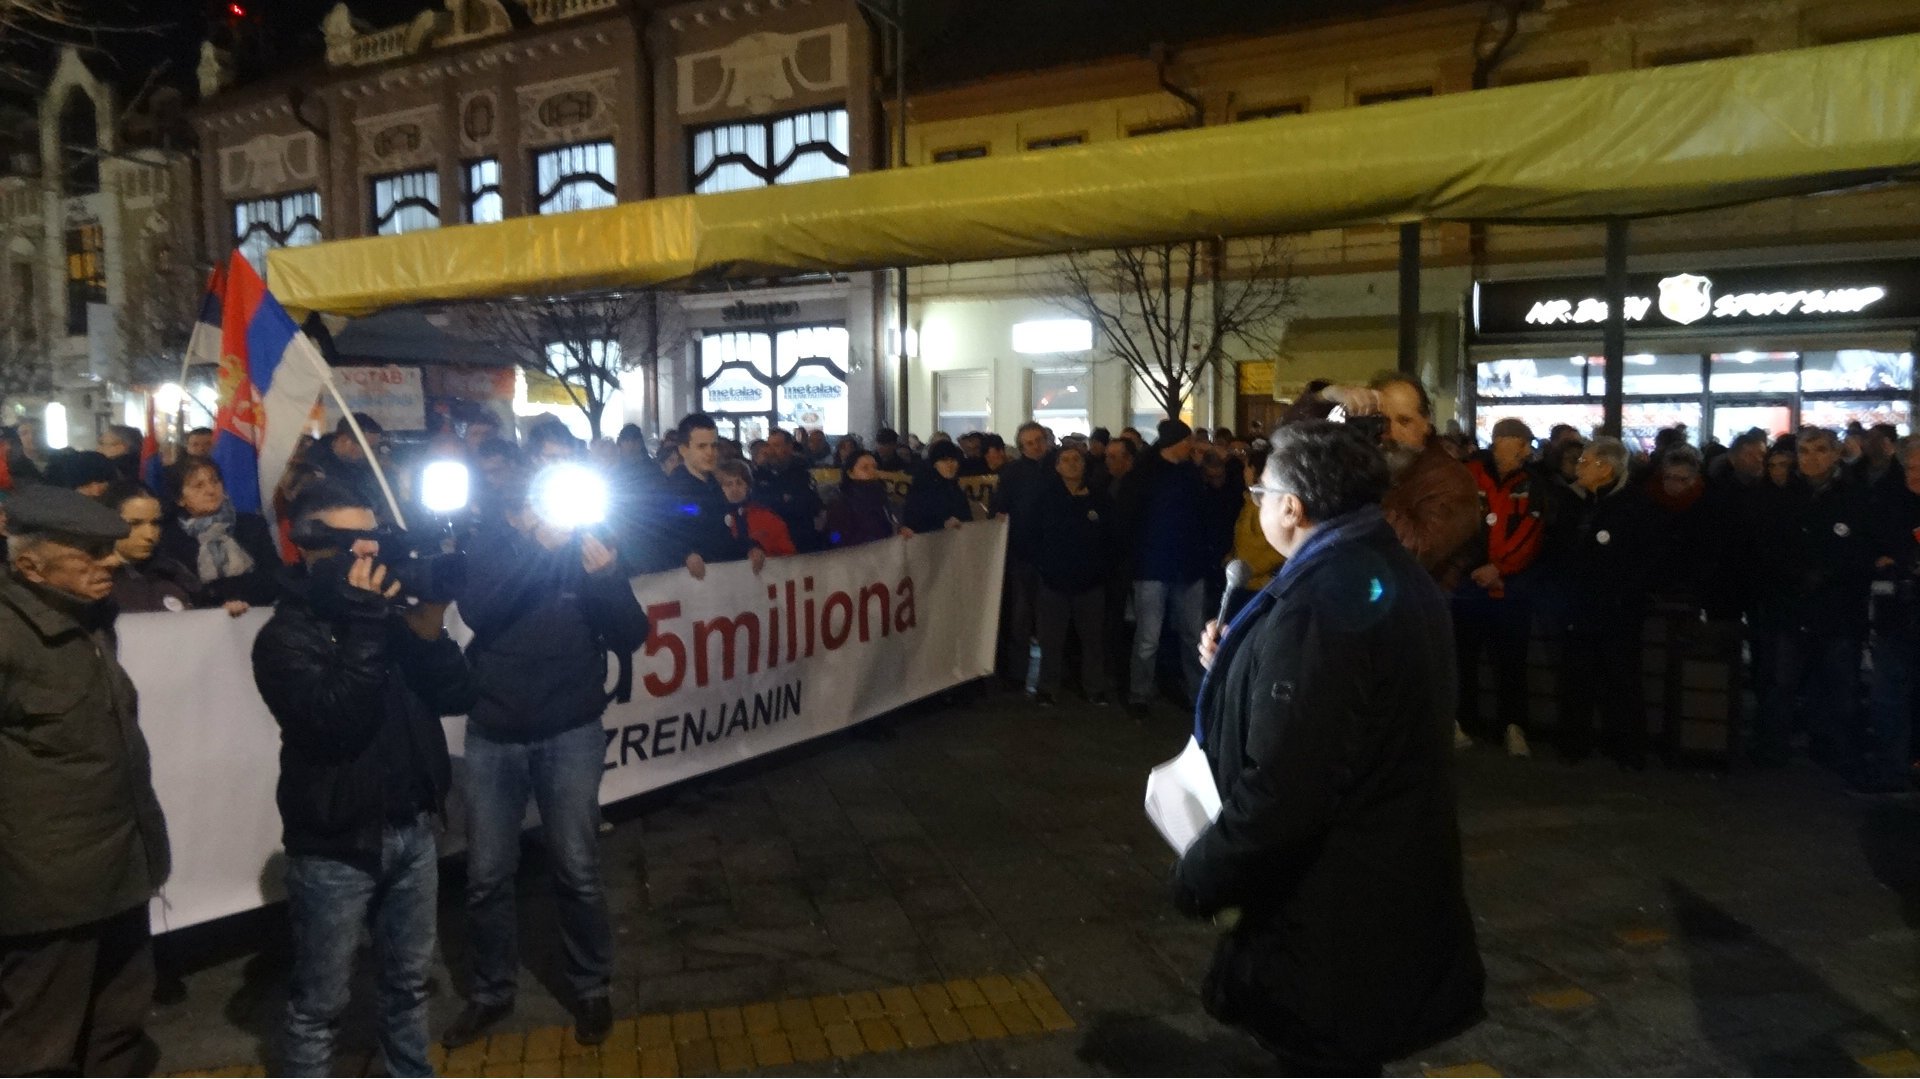 Organizacioni odbor protesta 1 od 5 miliona u Zrenjaninu najoštrije osudio hapšenje Zrenjaninaca 1